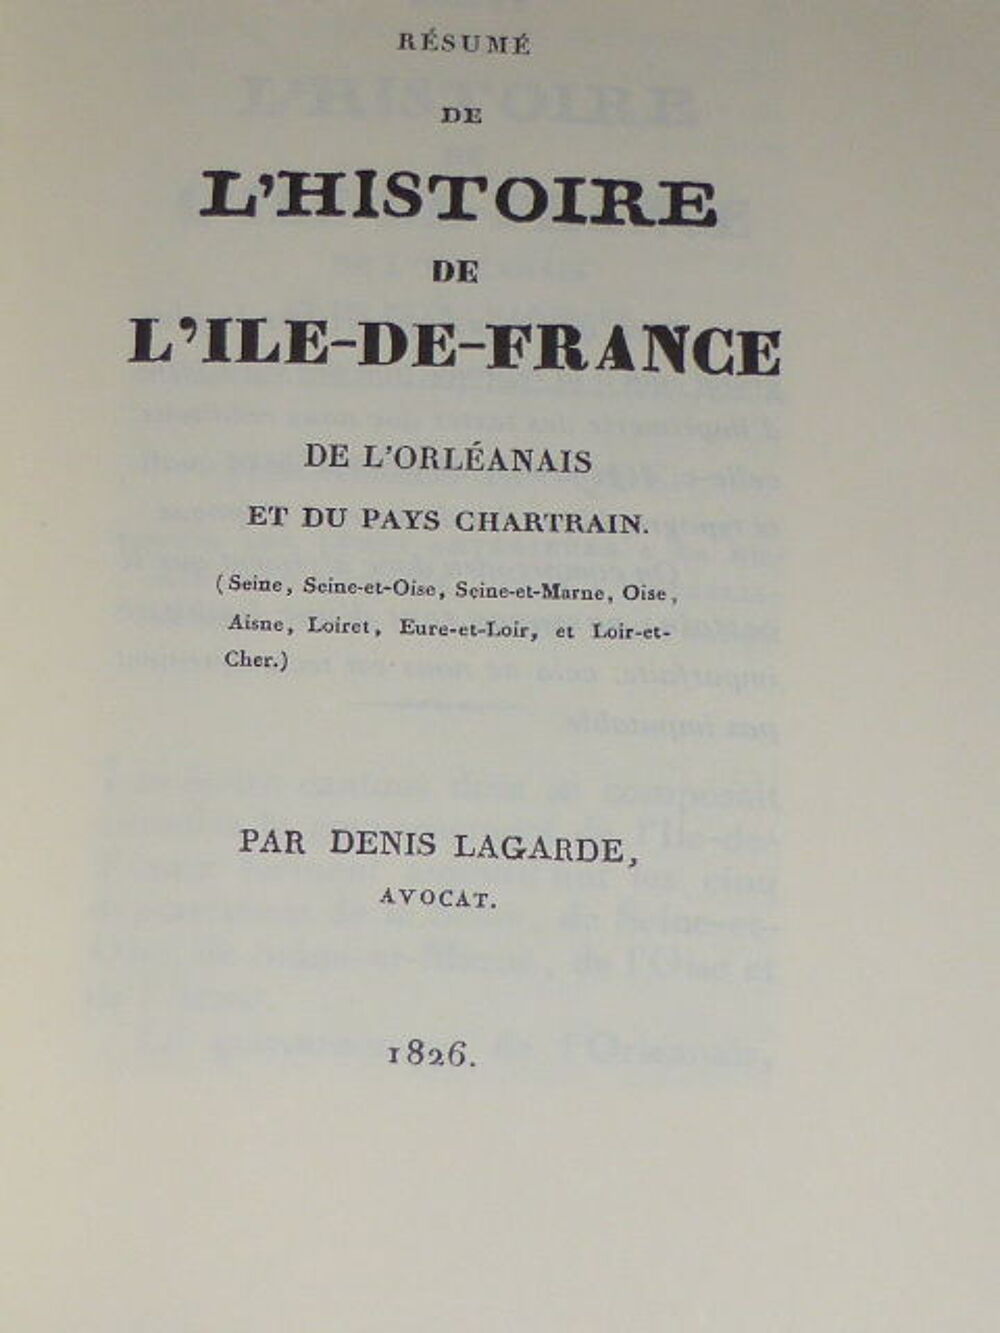 L'histoire de l'ile de France - Denis Lagarde Livres et BD